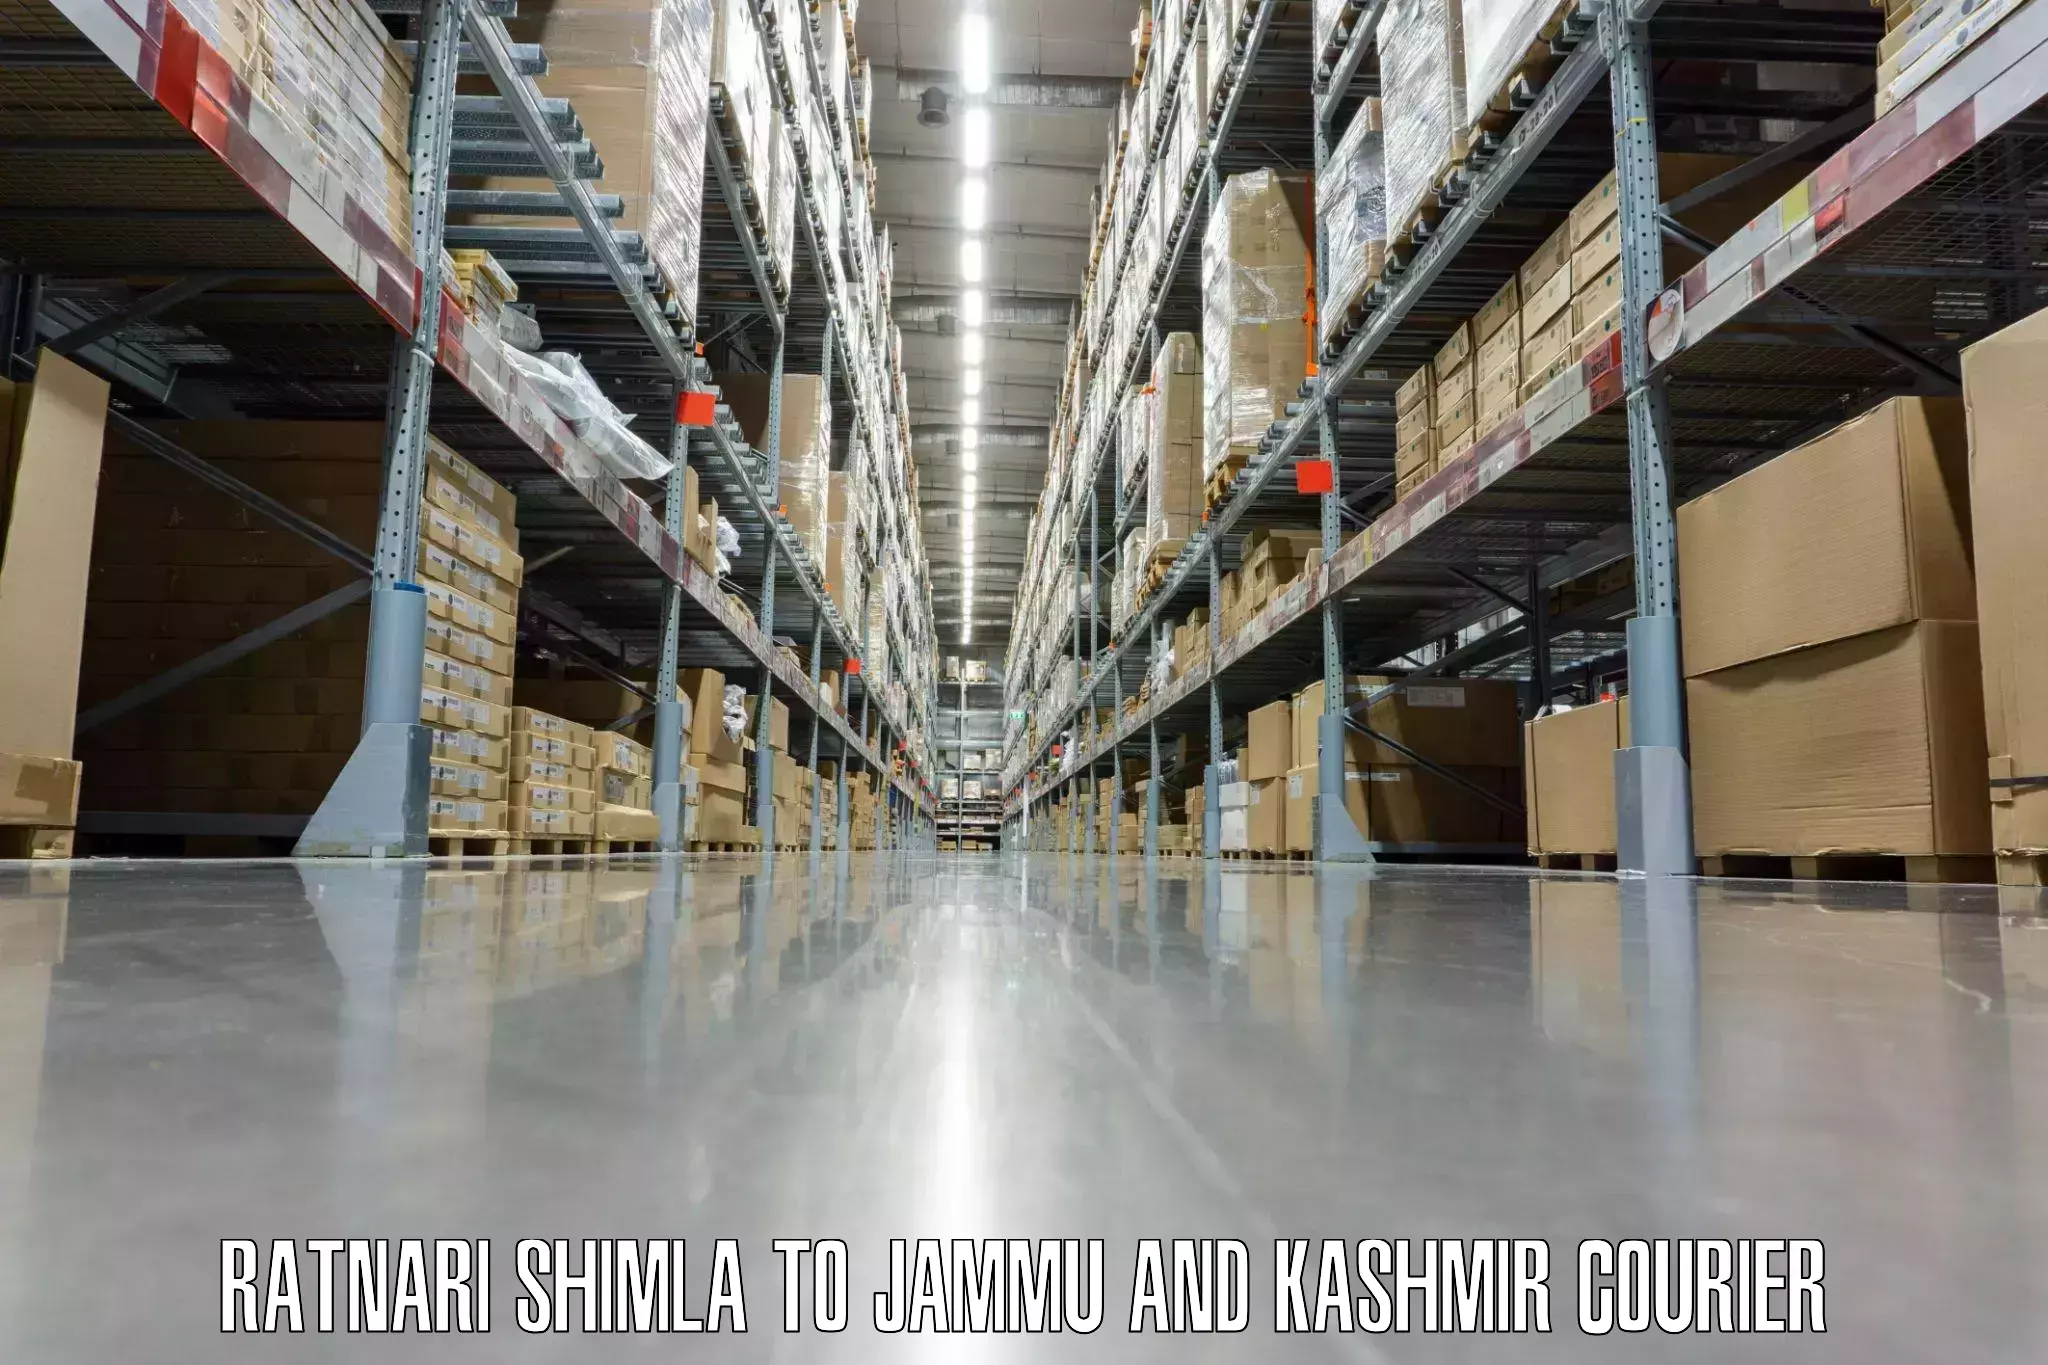 Baggage delivery technology Ratnari Shimla to Jammu and Kashmir